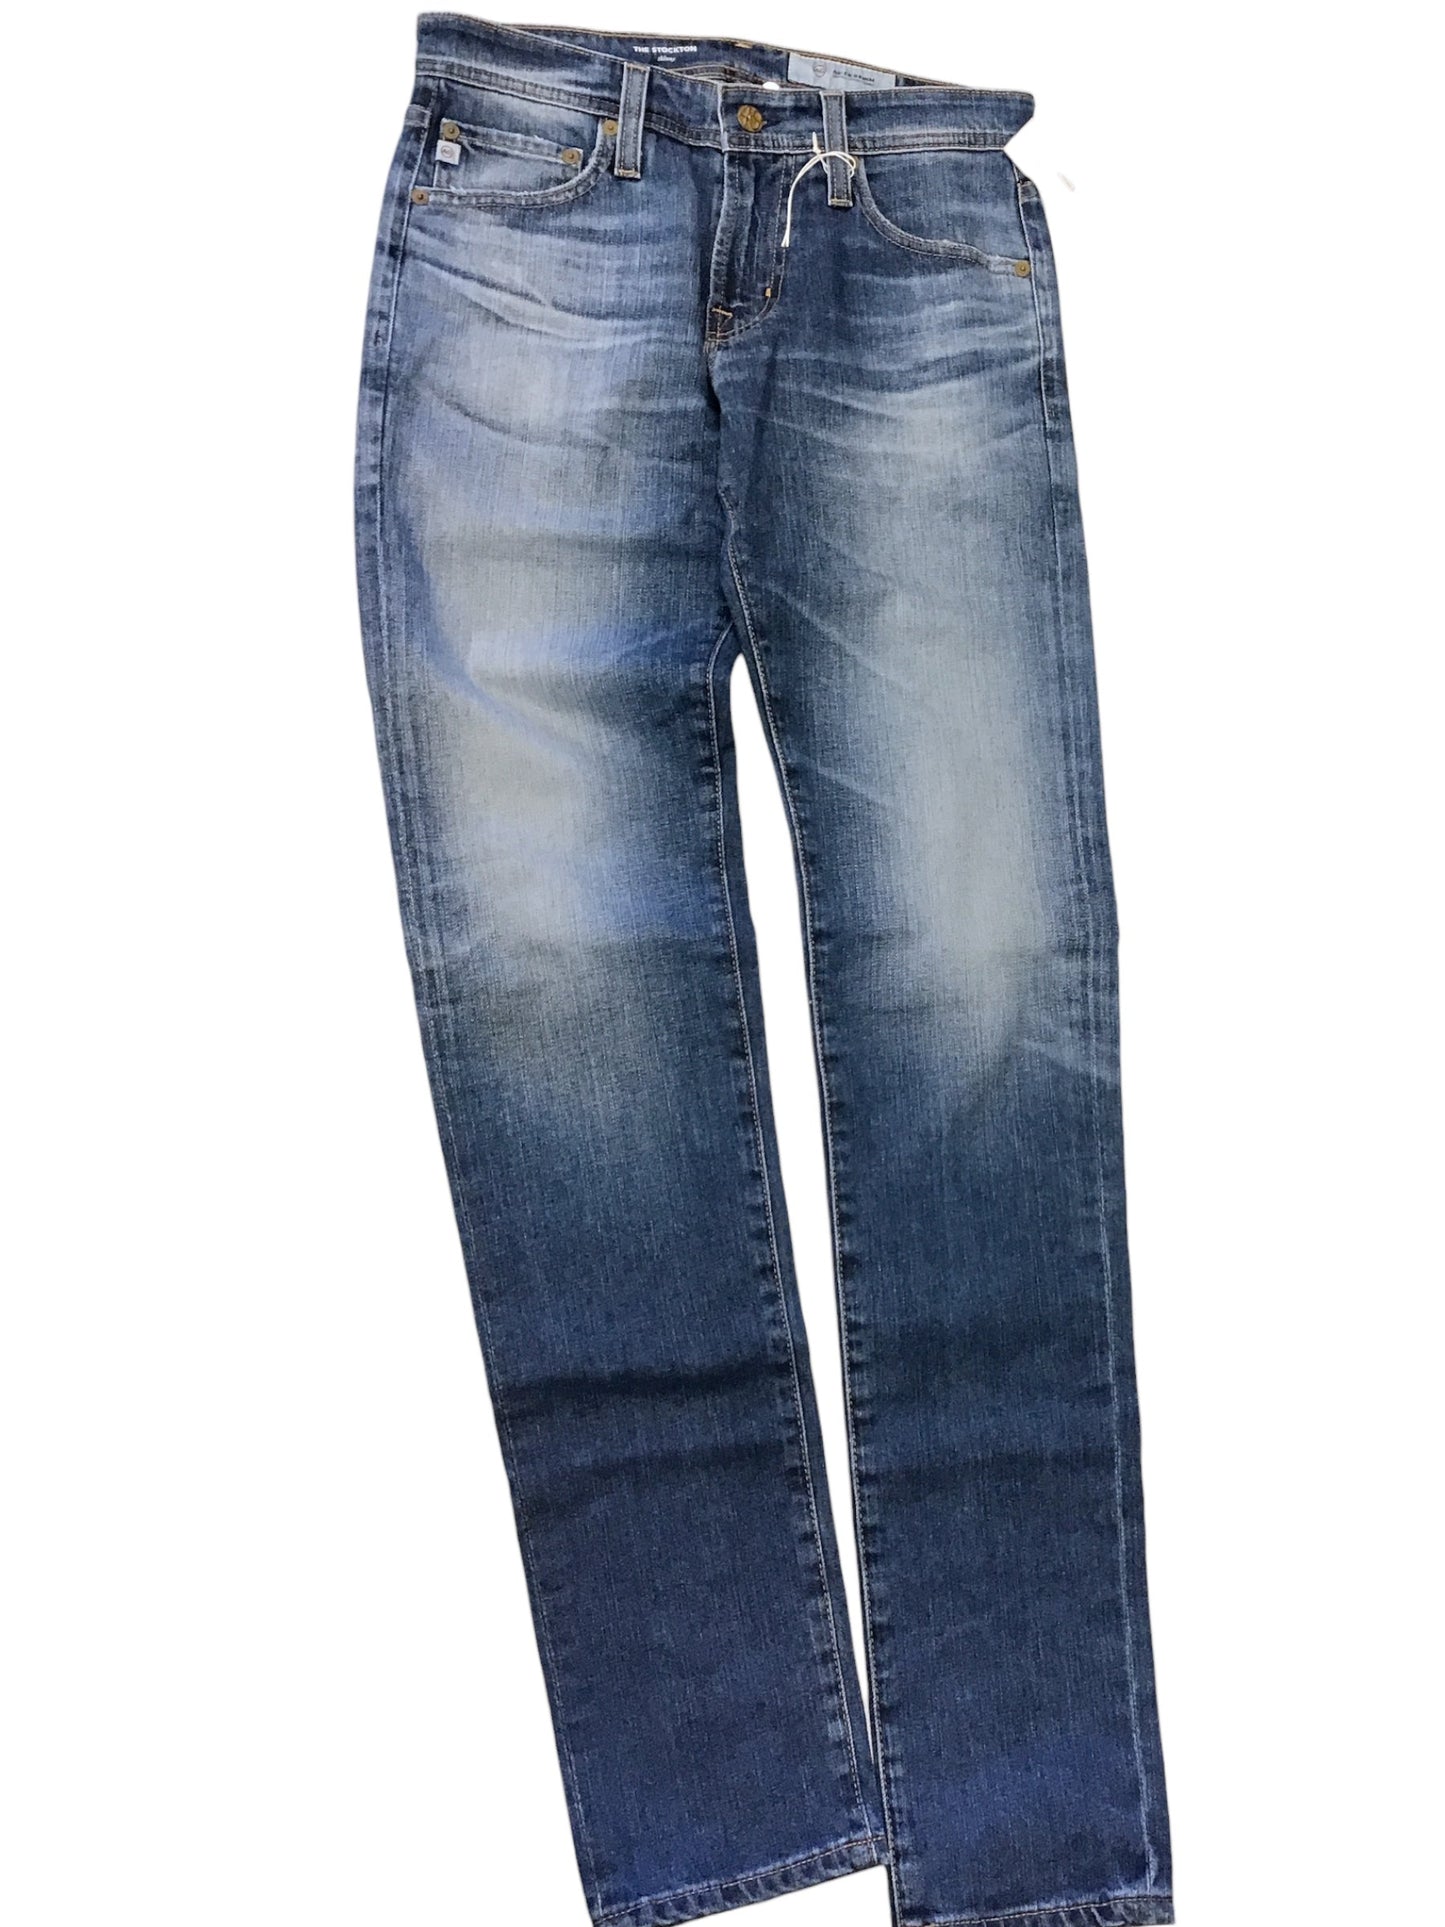 Blue Denim Jeans Skinny Adriano Goldschmied, Size 8